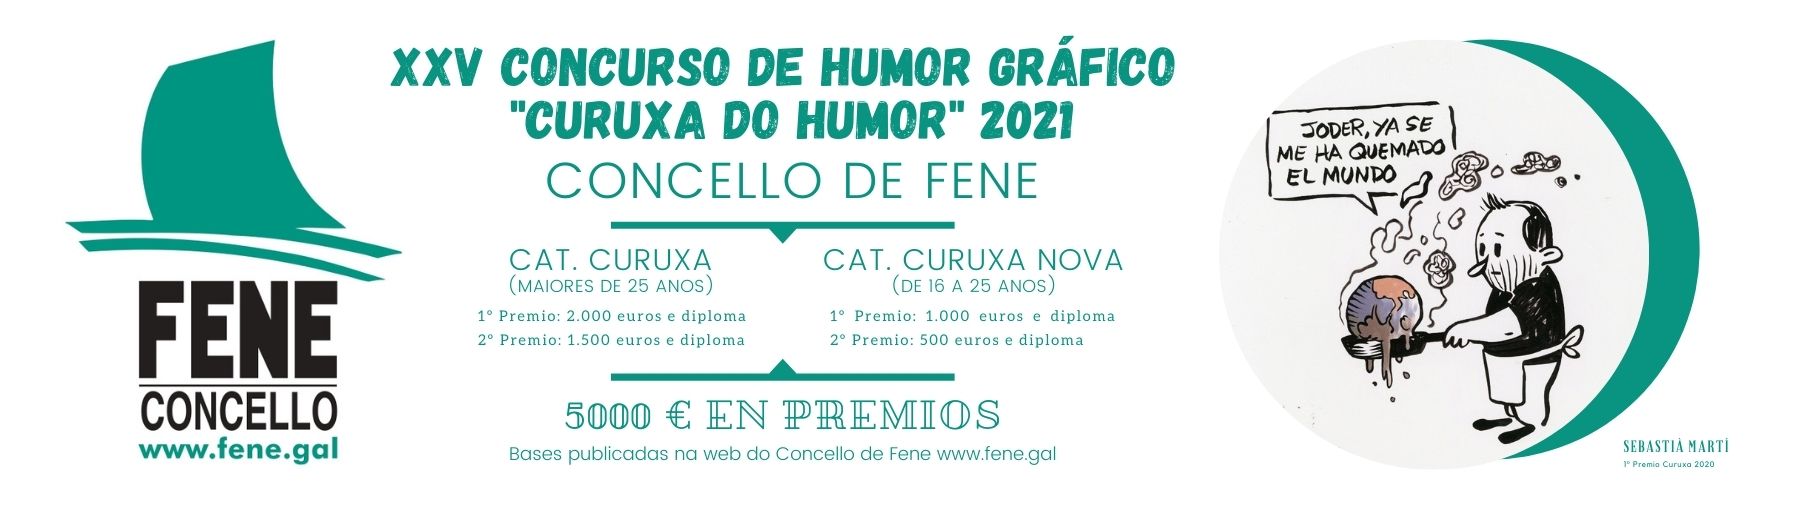  XXV Concurso de Humor Gráfico Curuxa do Humor 2021